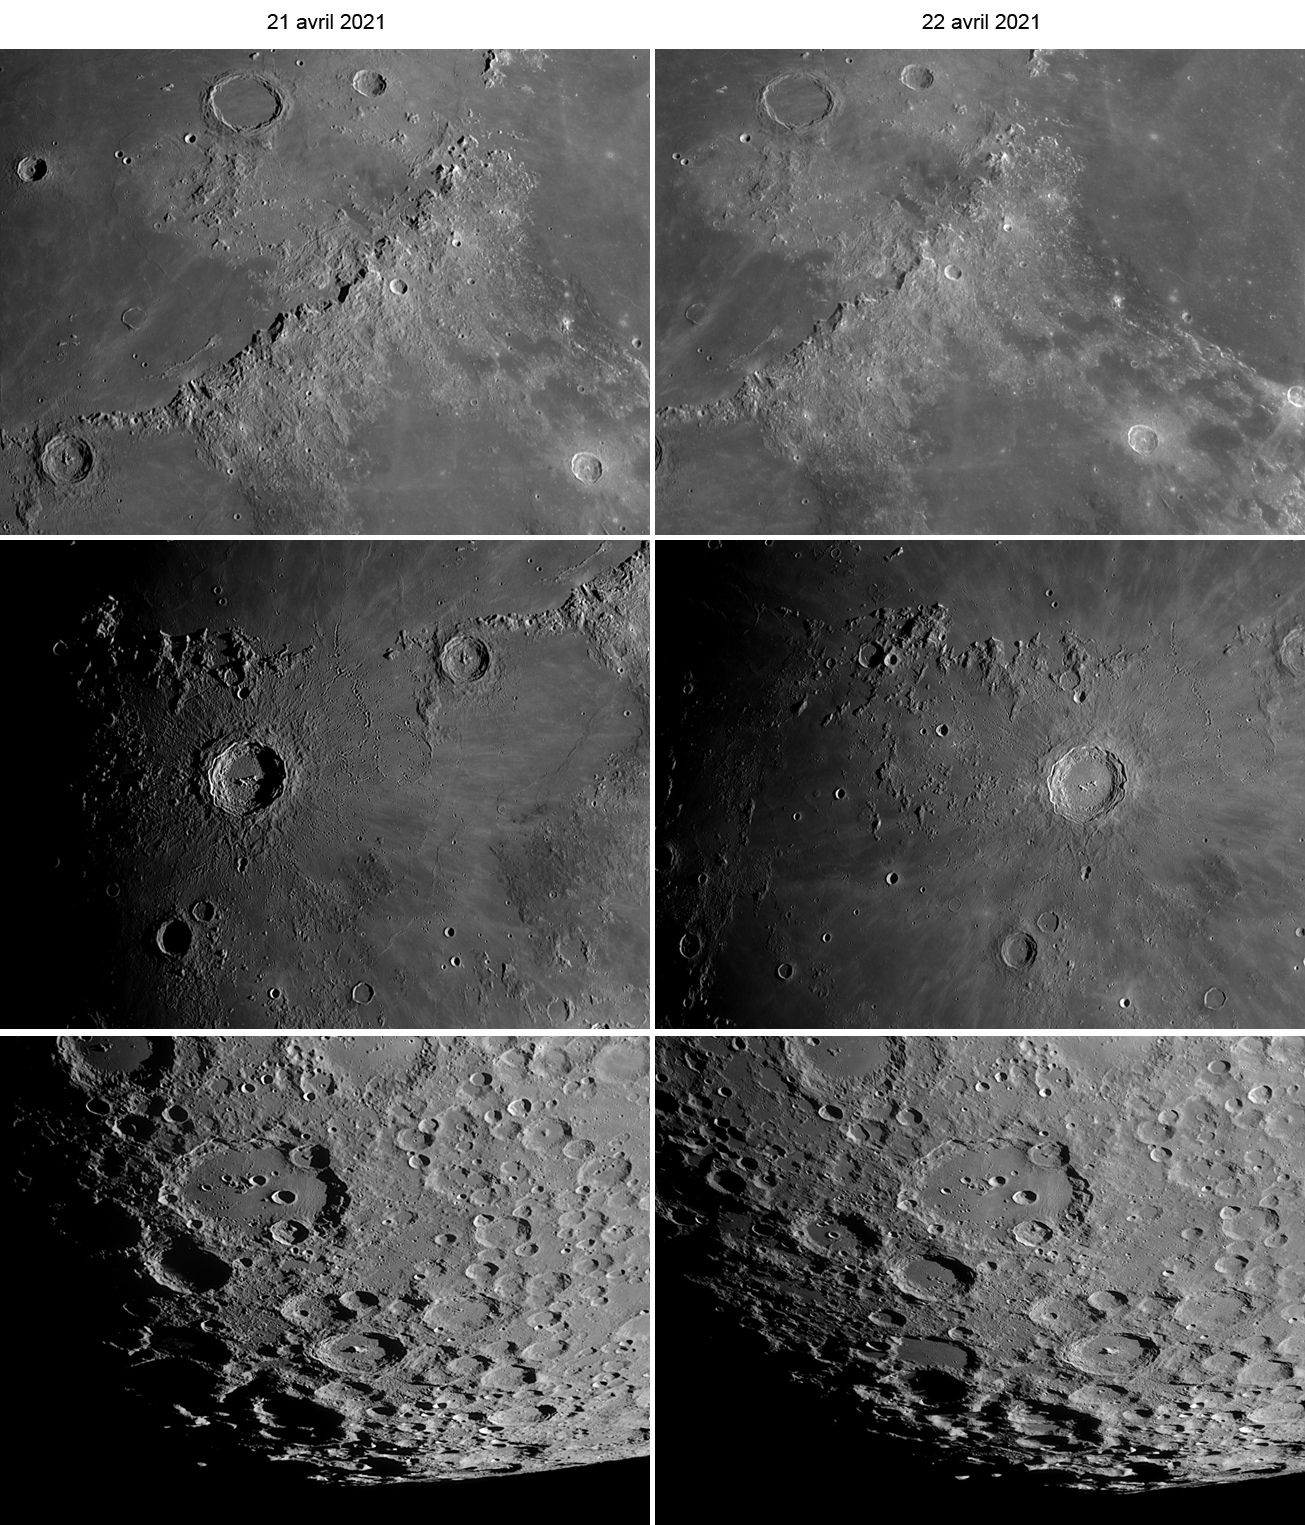 Lune-20210421_22-ba-Compa-PSp.jpg.3c4e7738cecb61f898bb60f27b696c0b.jpg